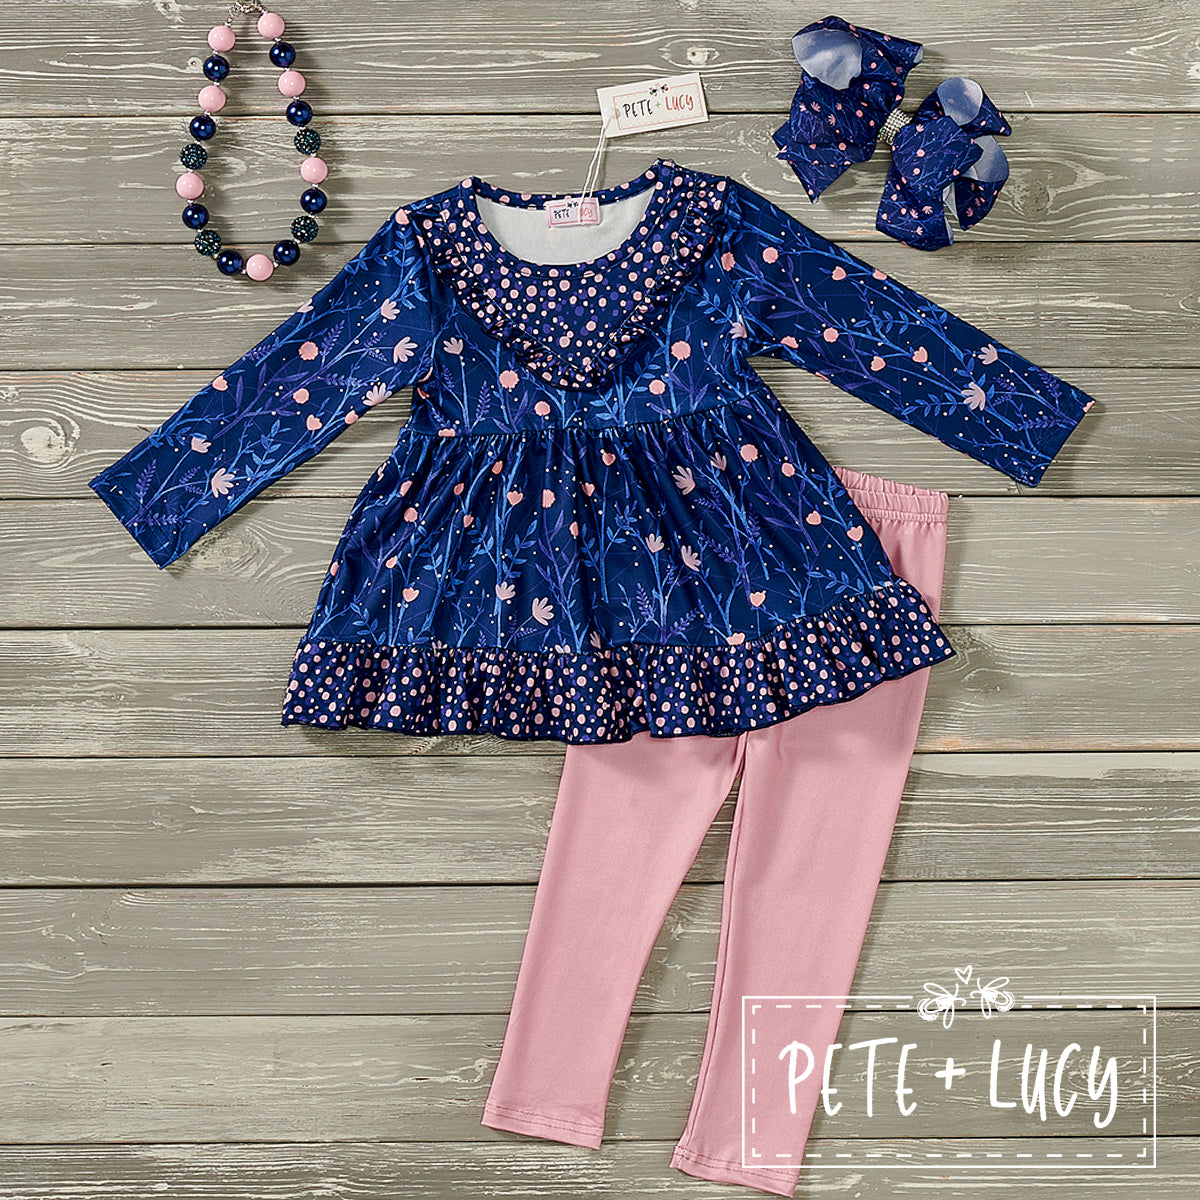 Pete+ Lucy Vibrant Owl 2 Piece Pants Set – Sublime Flamingo